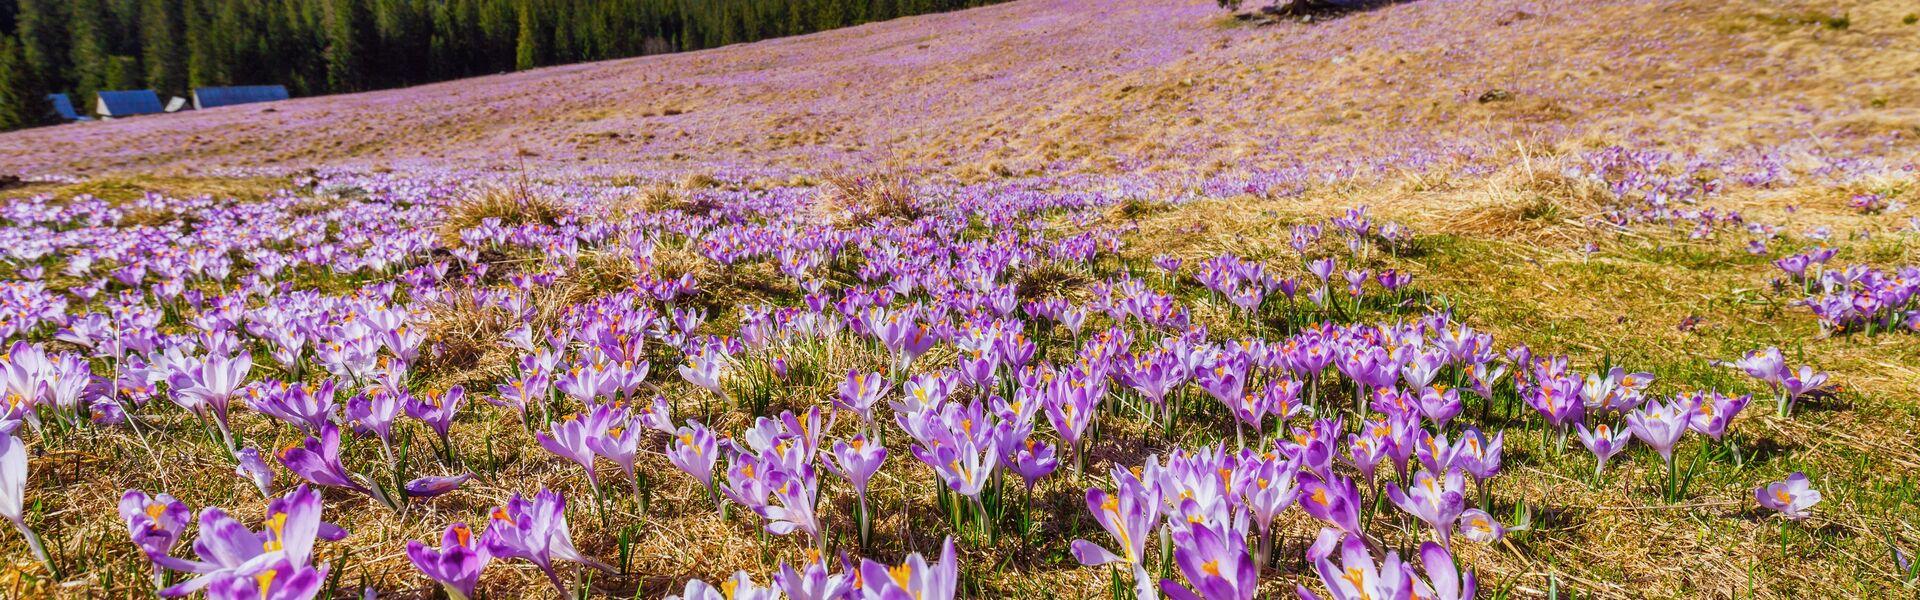 Dolina Chochołowska z mnóstwem kwitnących na fioletowo krokusów